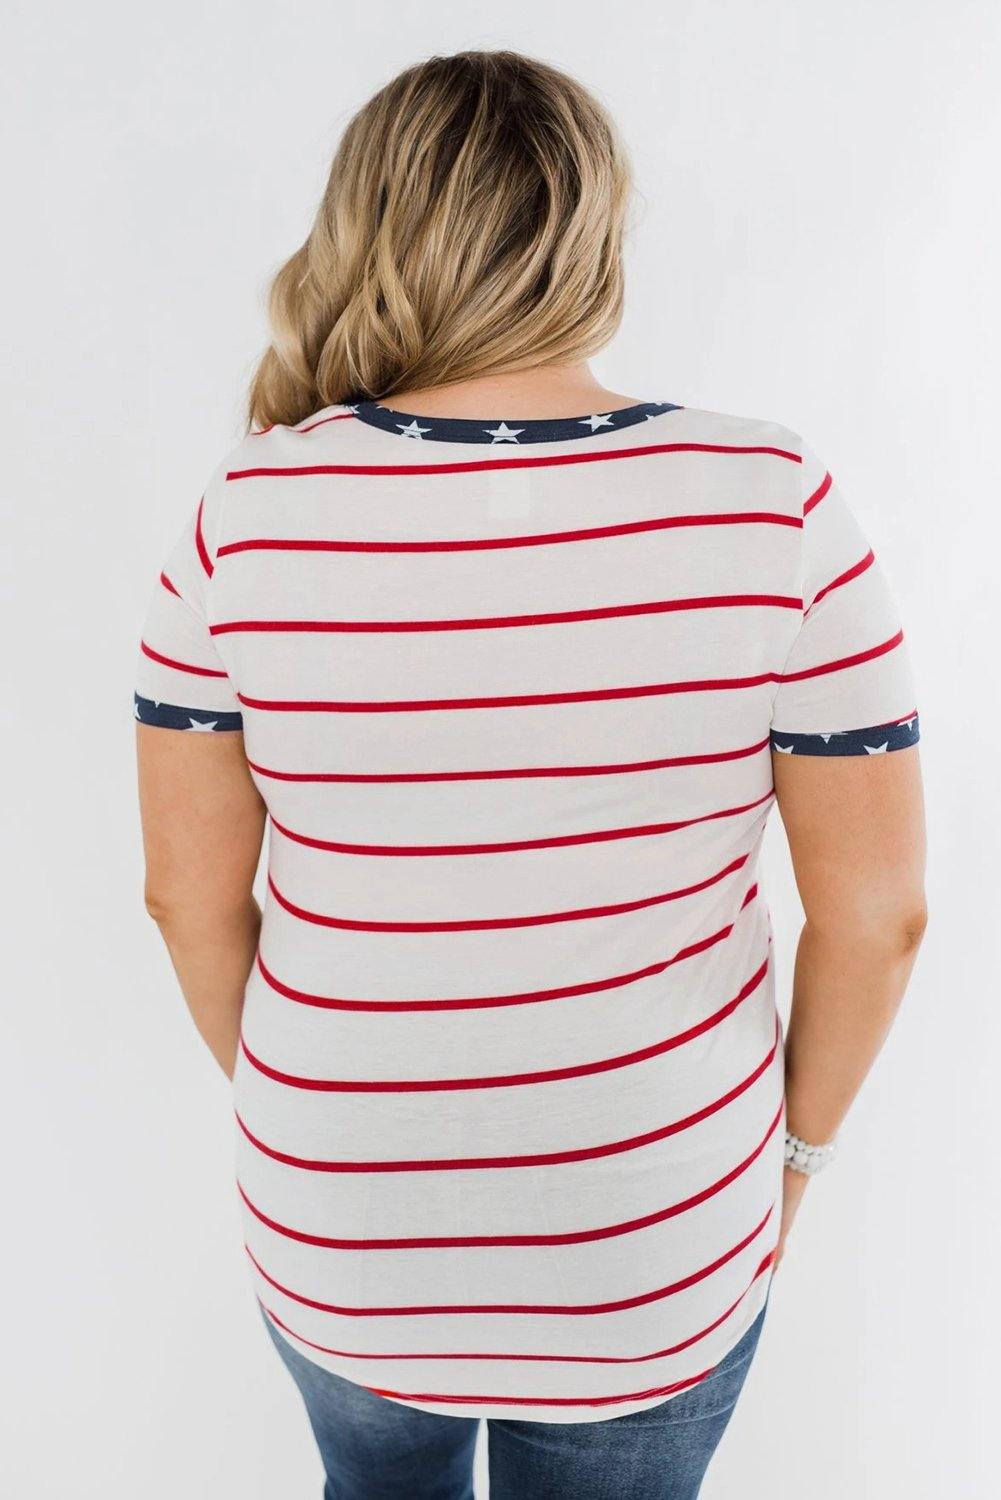 Stripes & Stars Plus Size T-shirt - L & M Kee, LLC